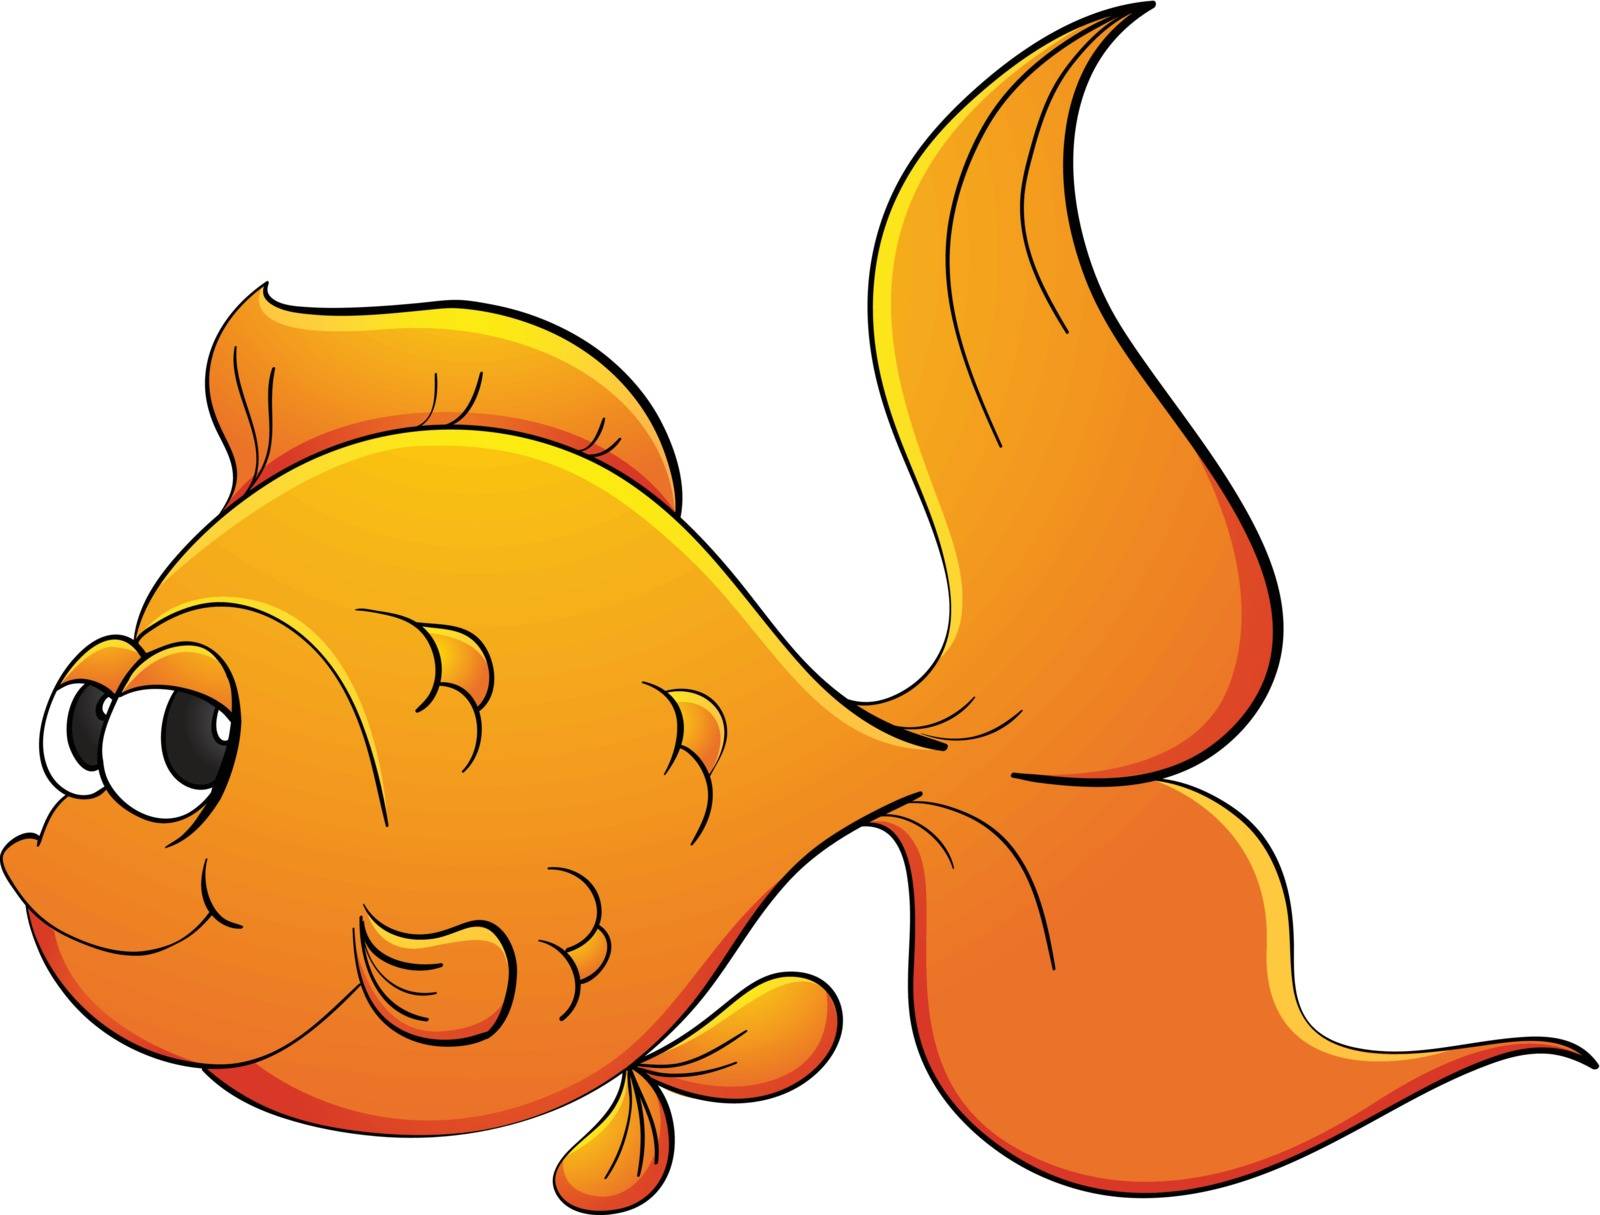 Illustration of goldfish on white